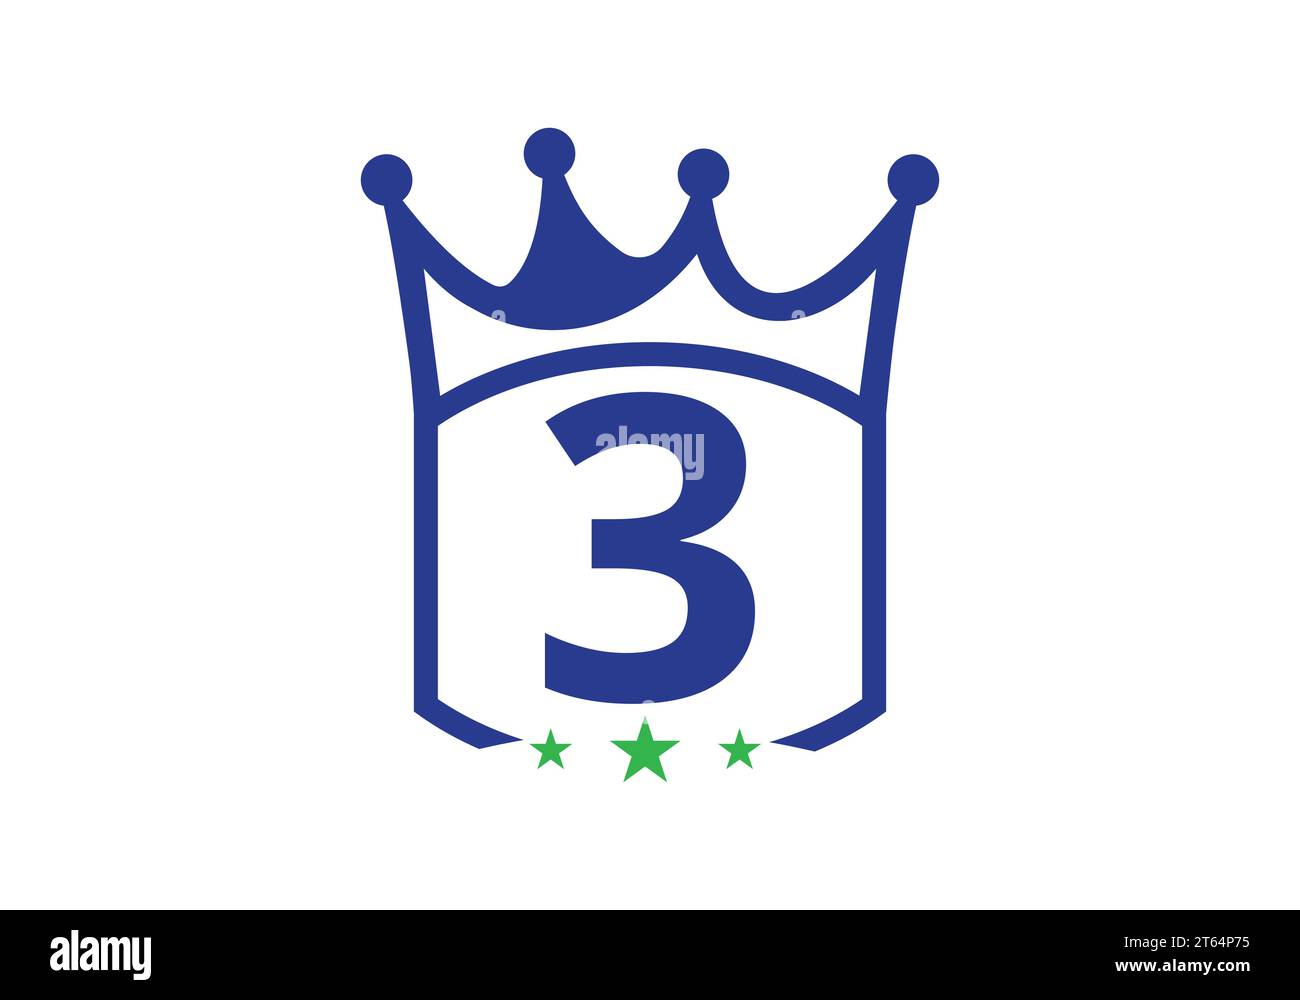 Letter 3 King Crown Design Vektor Vorlage. Letter-Logo-Icon mit Königskrone-Vorlage Stock Vektor